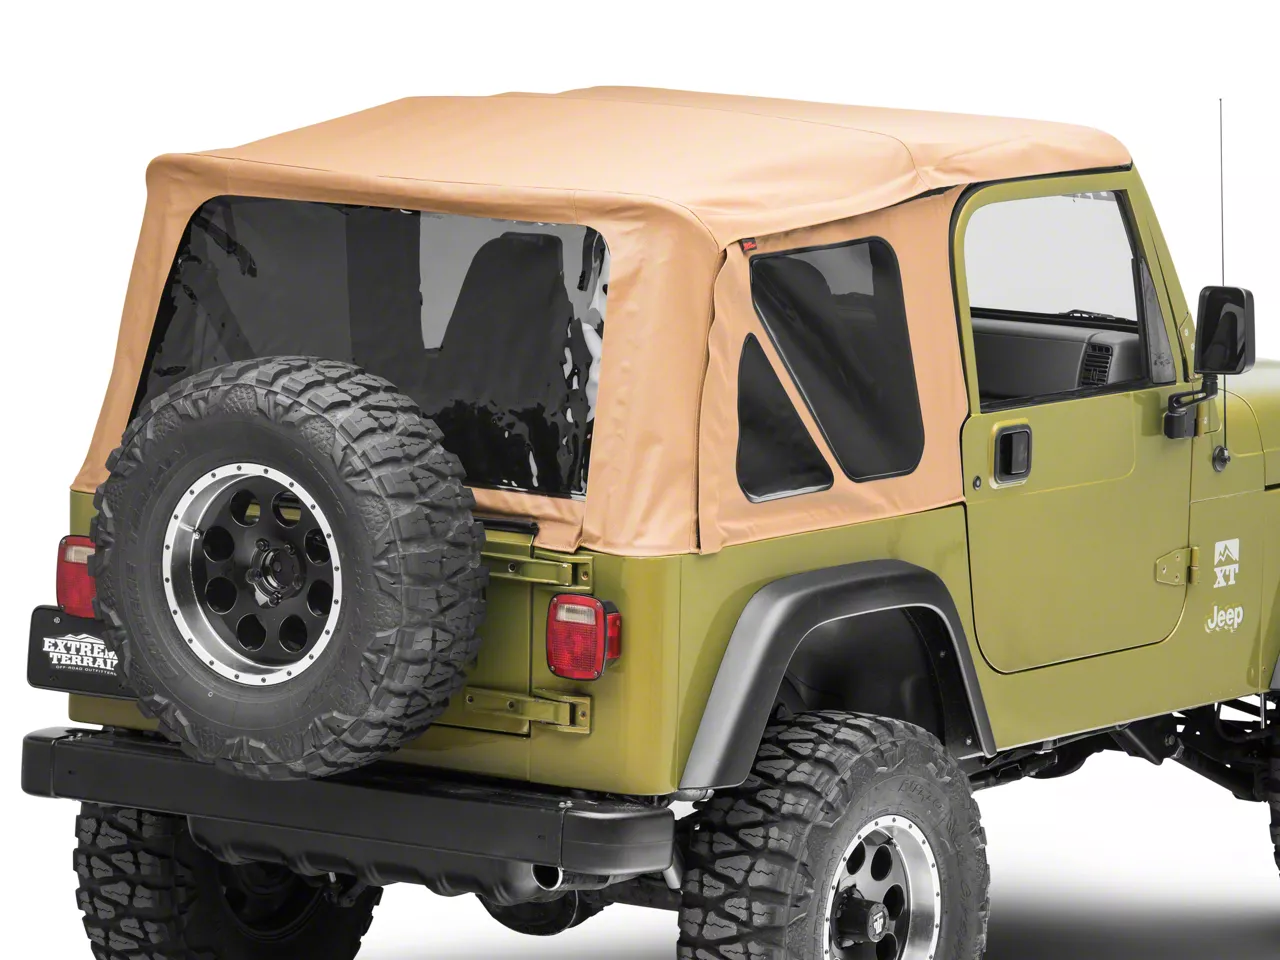 Smittybilt Jeep Wrangler Replacement Top w/ Upper Door Skins - Spice Denim  9870217 (87-95 Jeep Wrangler YJ w/ Factory Soft Top u0026 Half Doors)